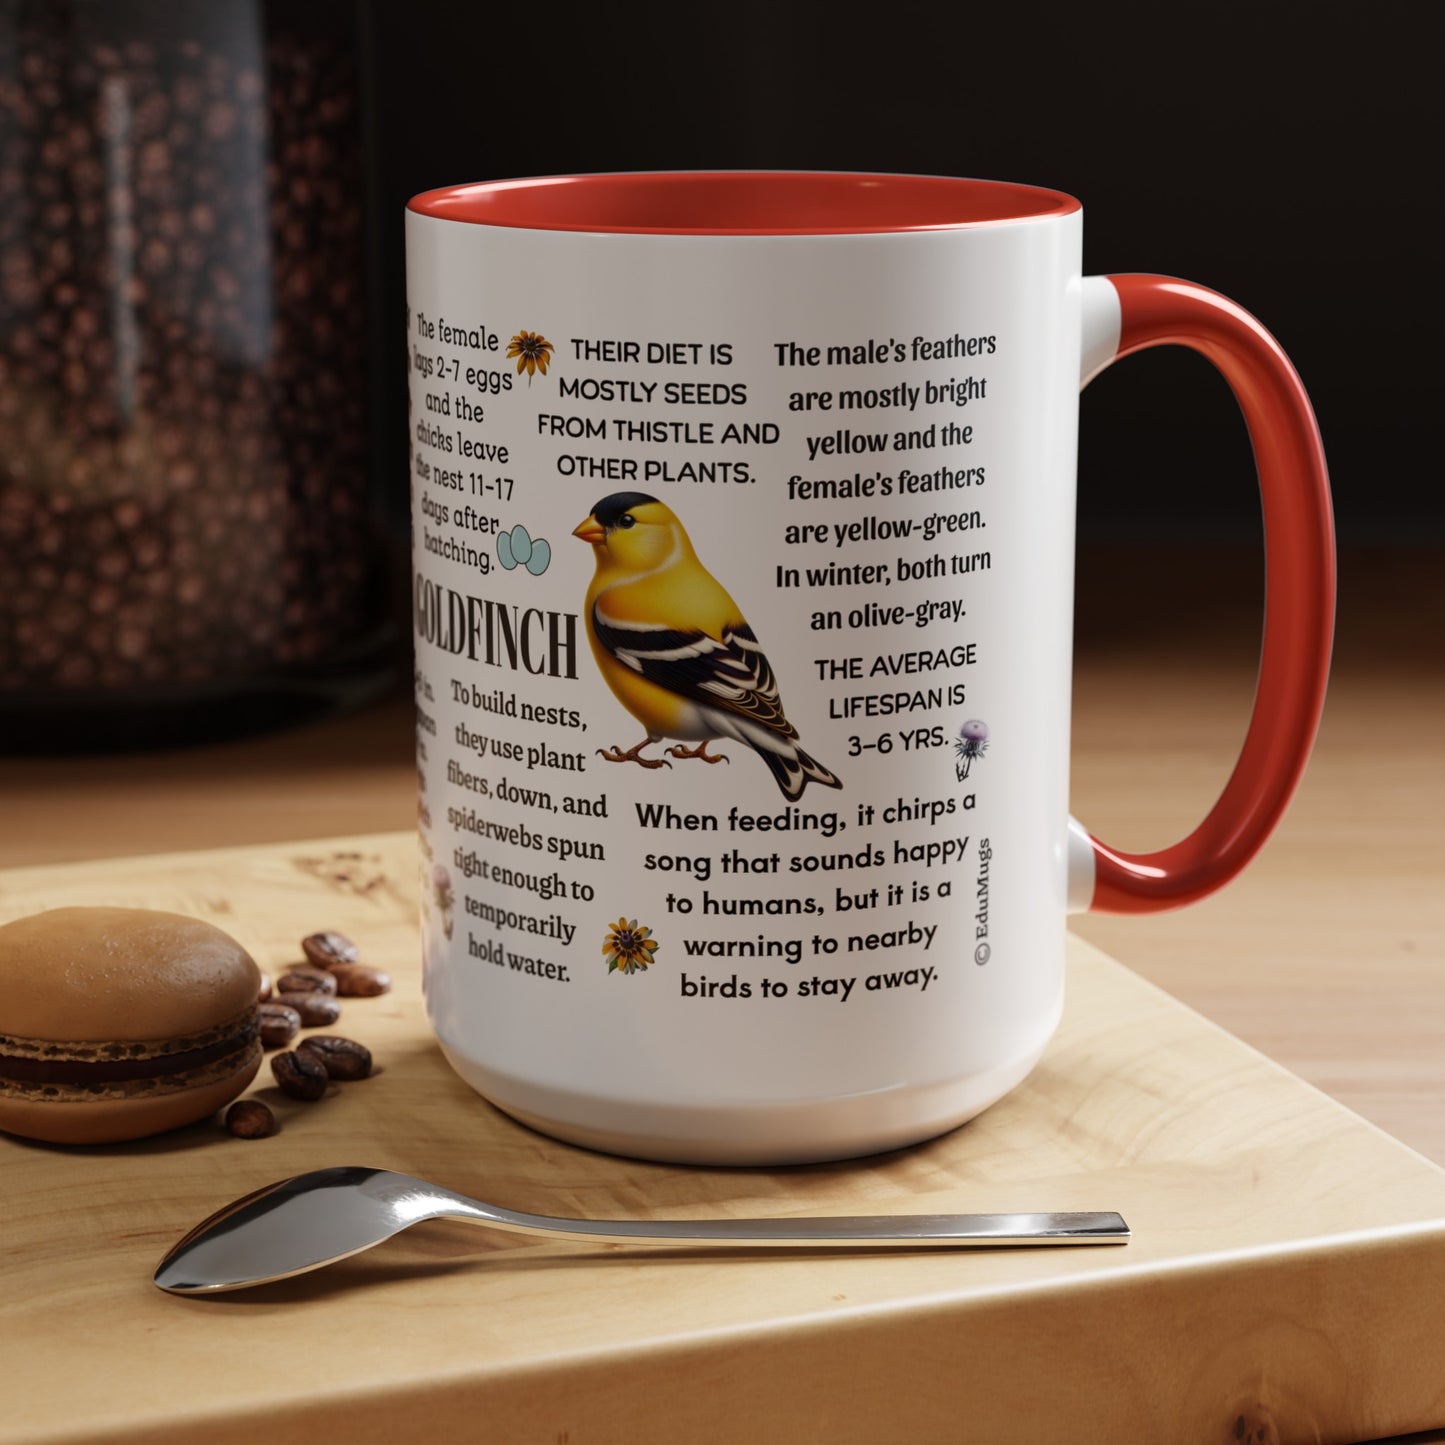 American Goldfinch Coffee Mug, 11 oz or 15oz